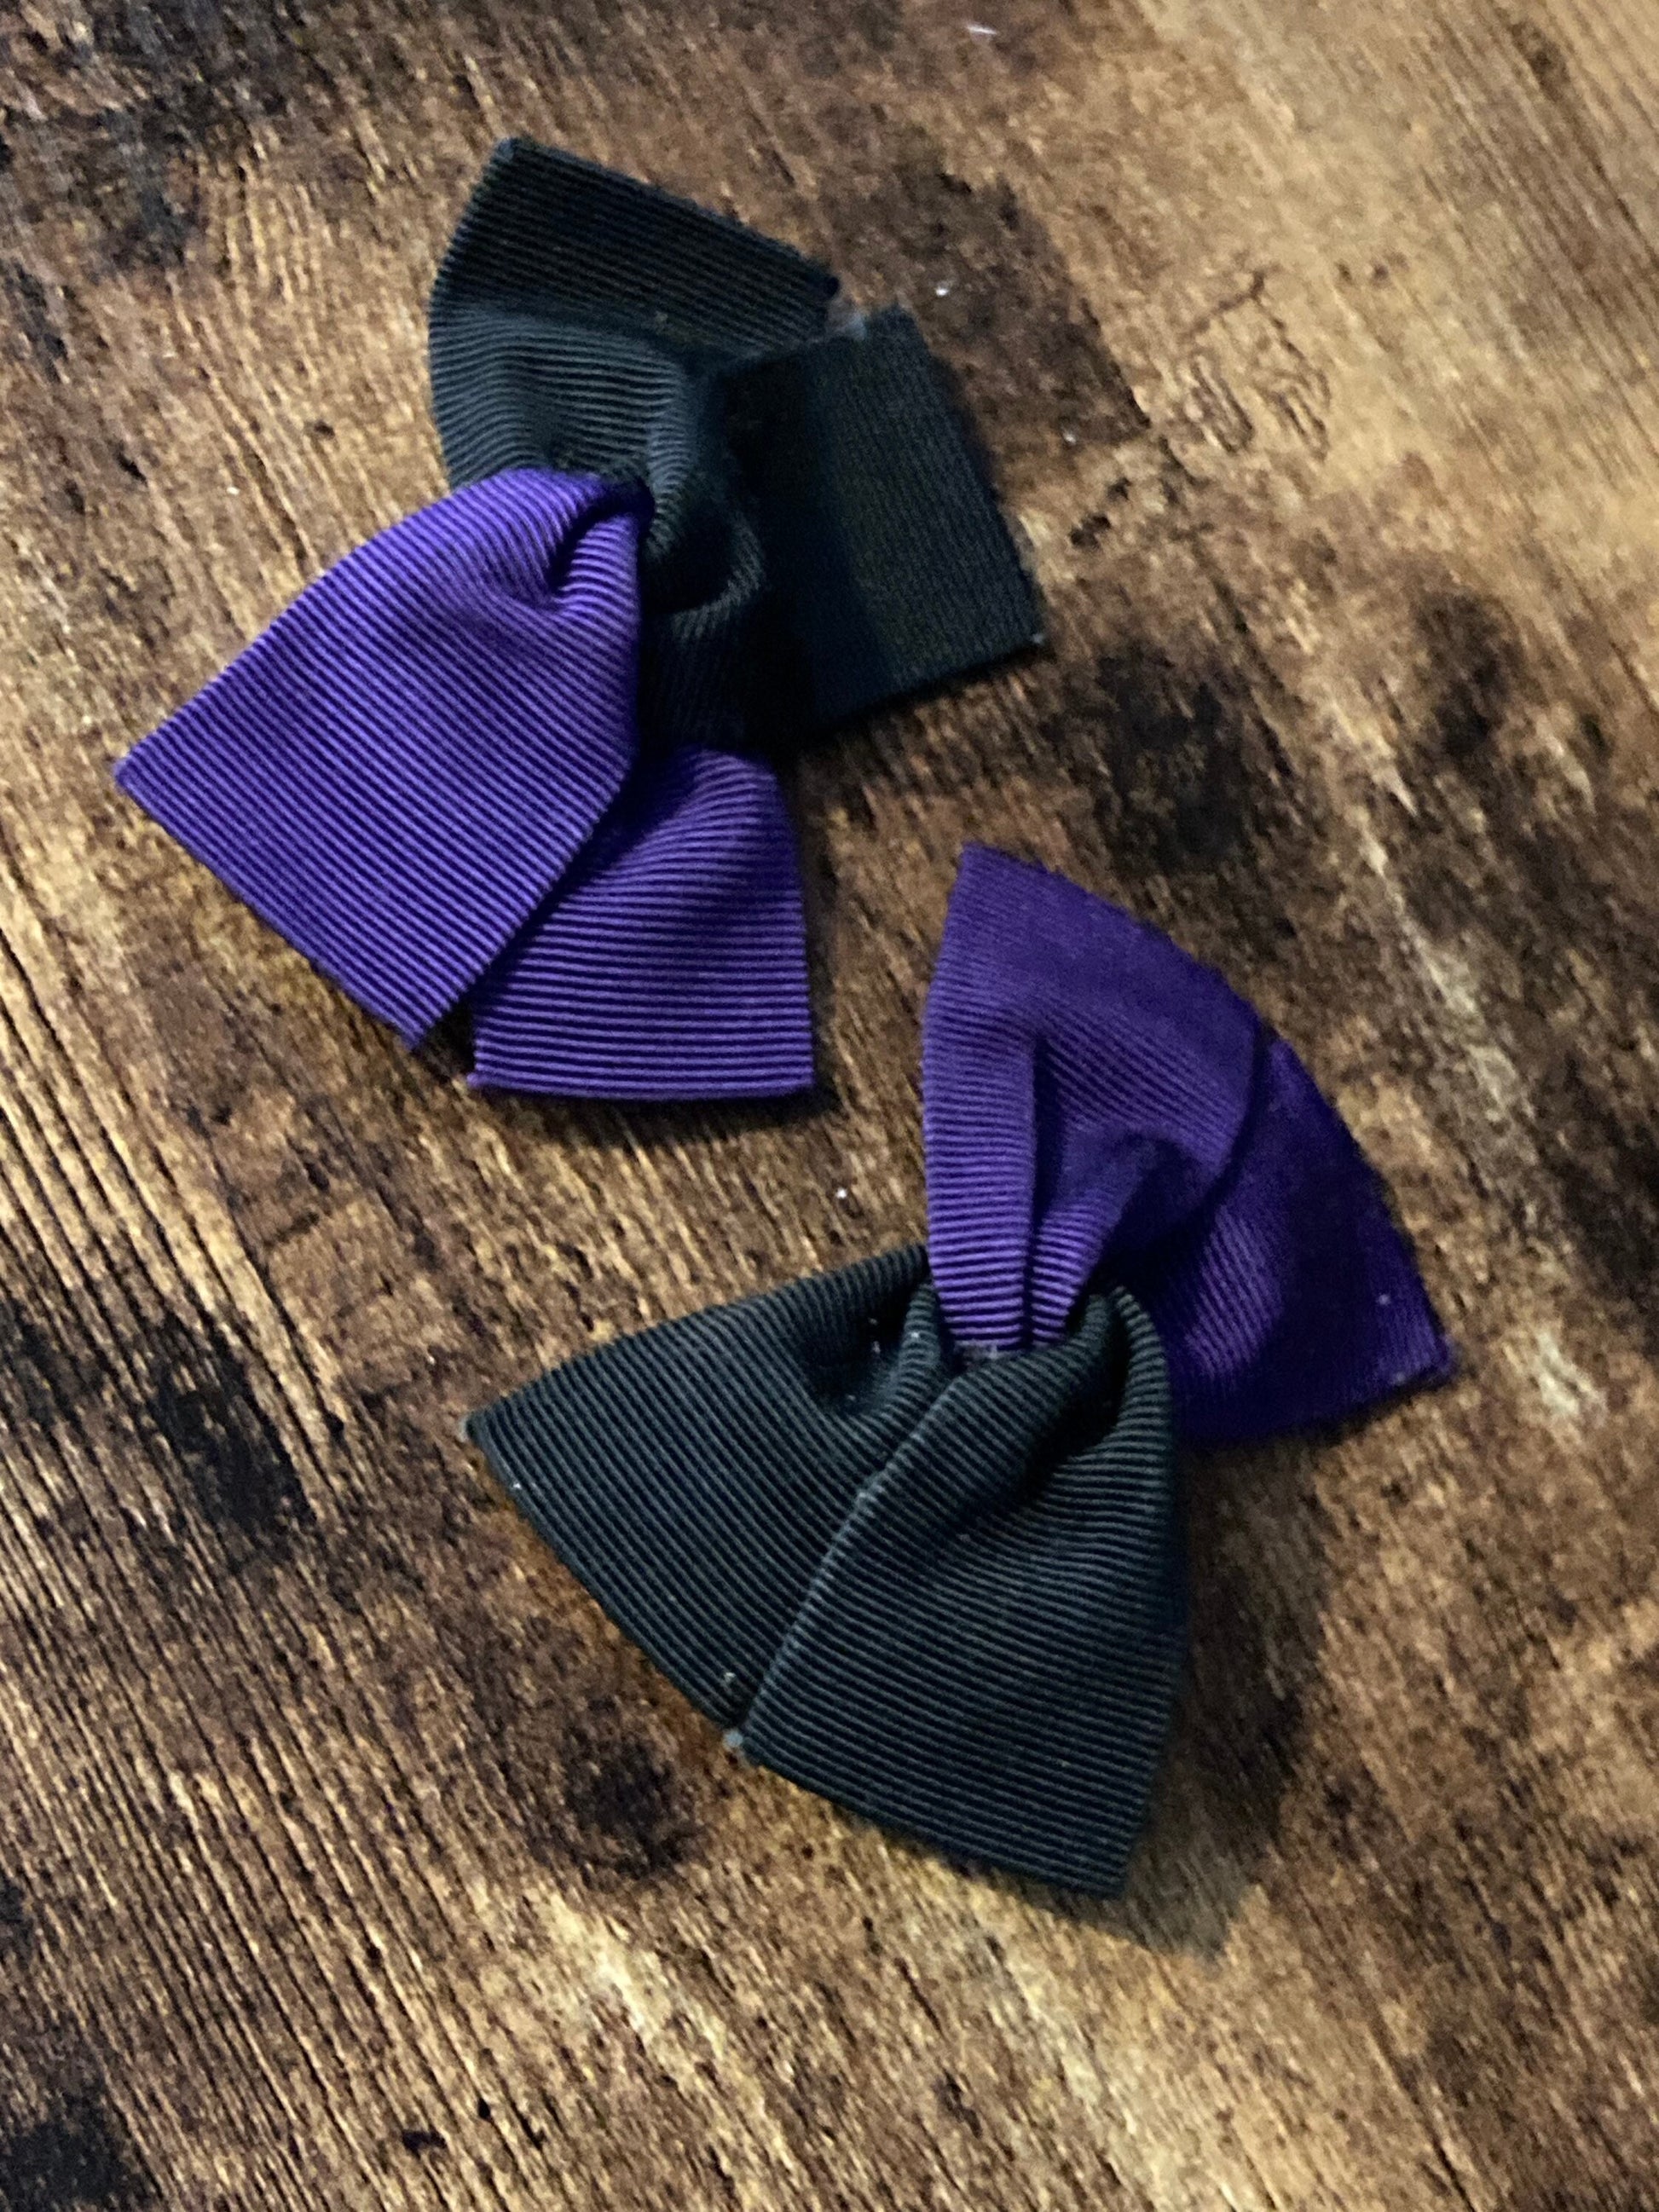 Vintage Retro Black & purple grosgrain pair of shoe clips